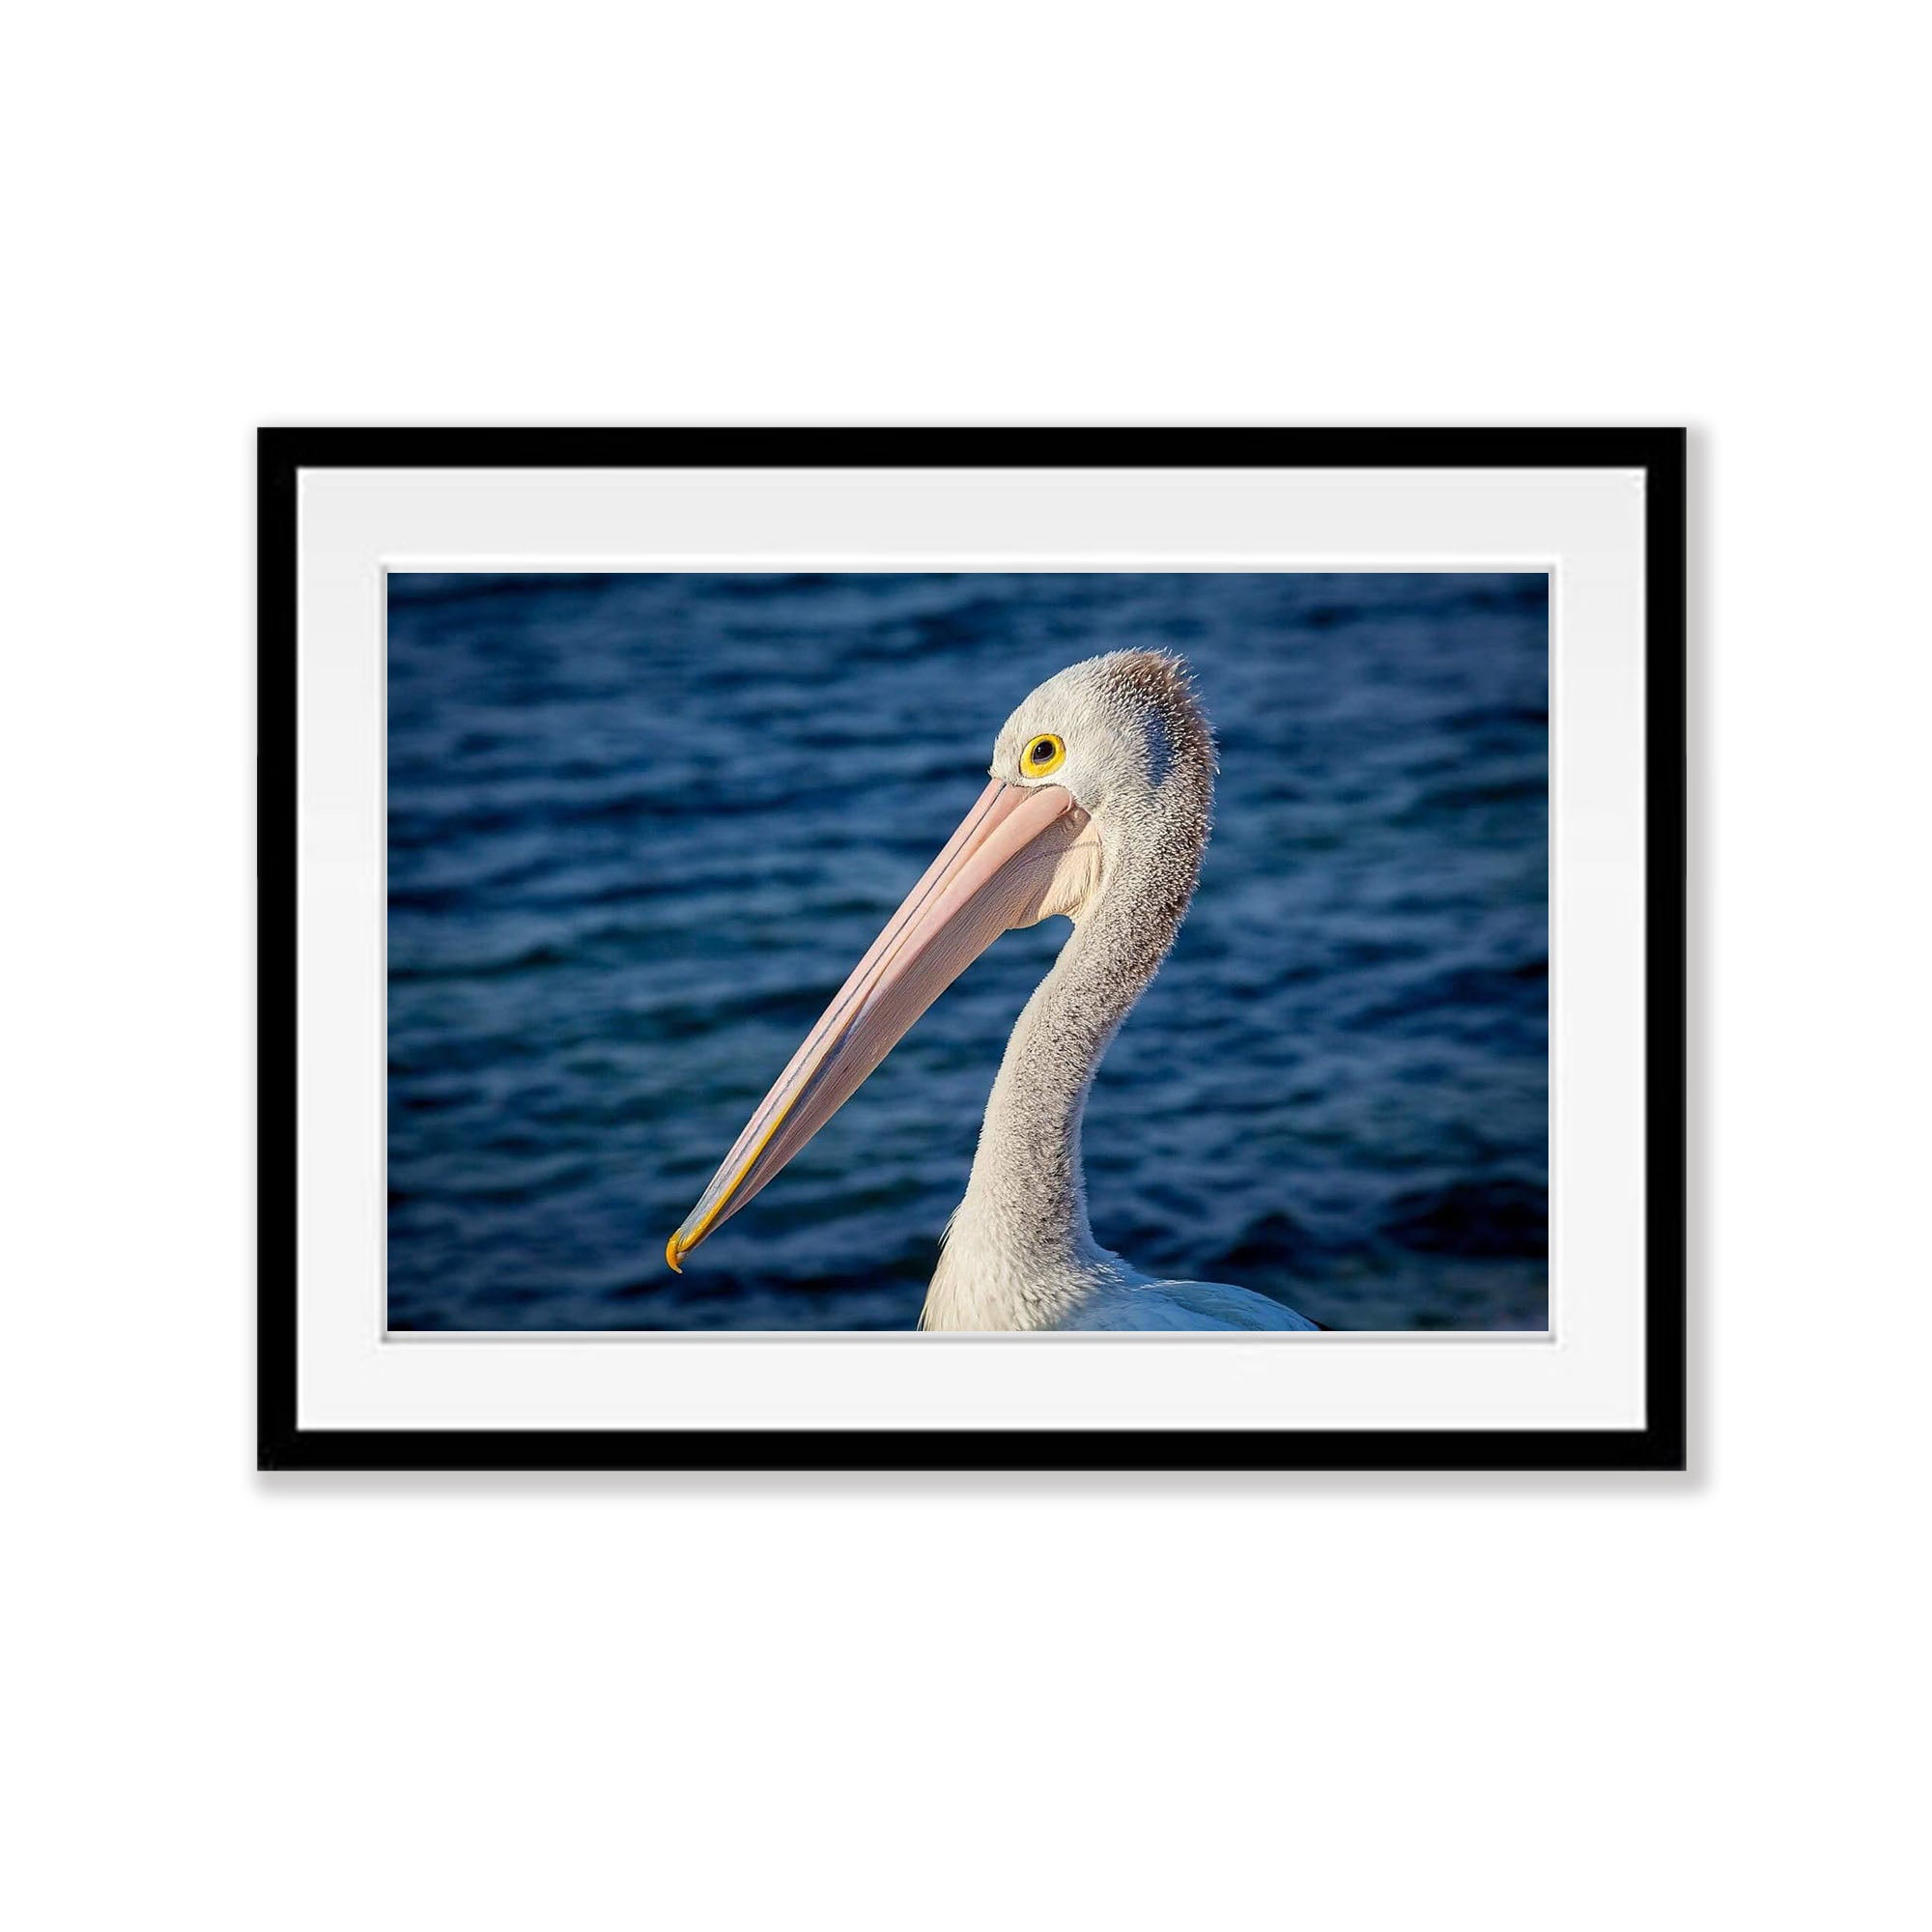 Pelican #3, Kangaroo Island, South Australia